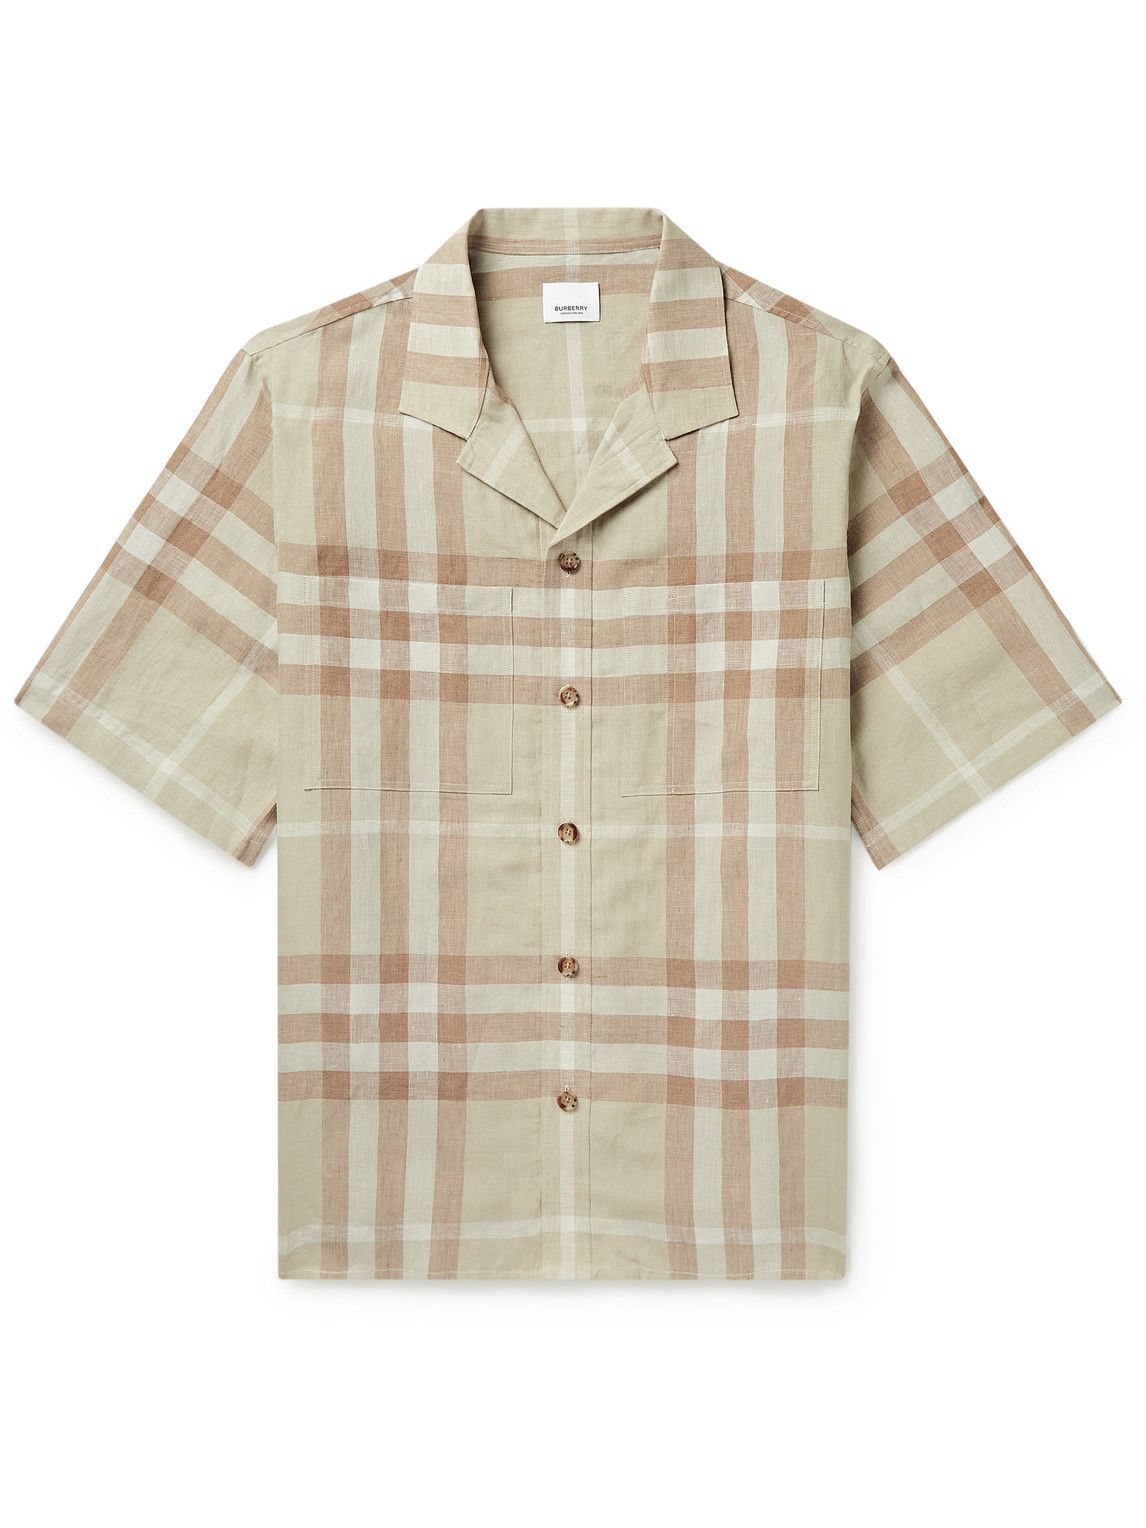 Burberry - Oversized Camp-Collar Checked Linen Shirt - Neutrals Burberry